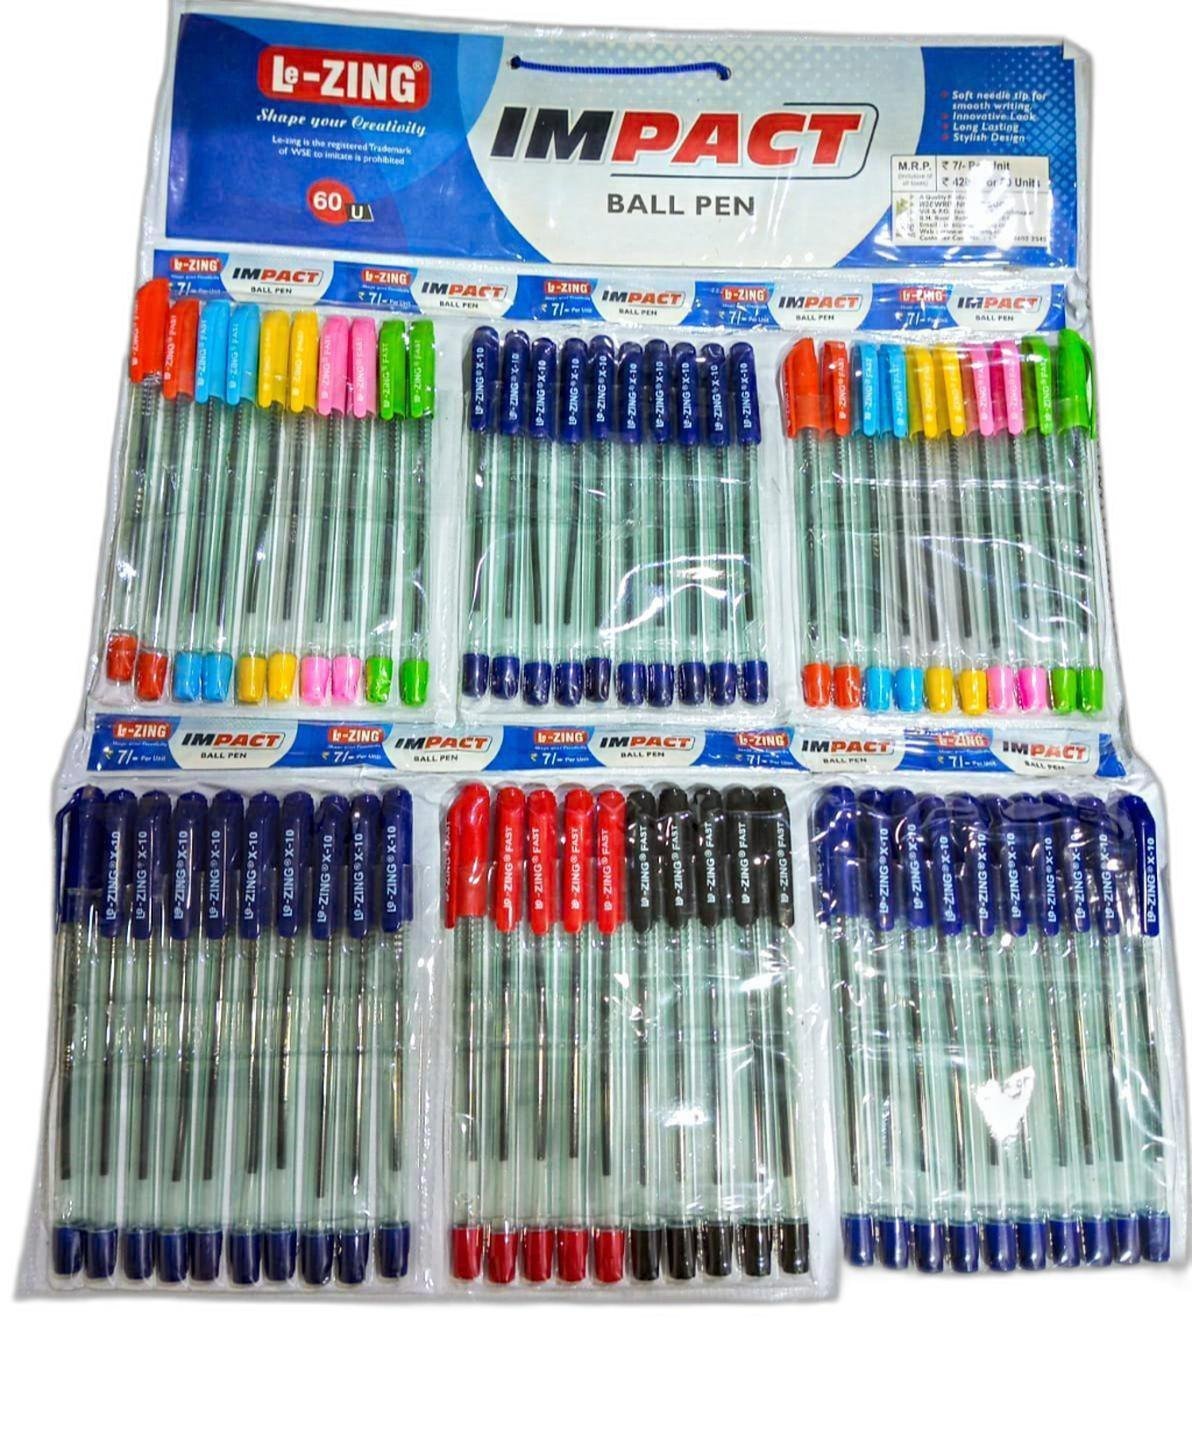 Lezing Impact - Ball Pens 